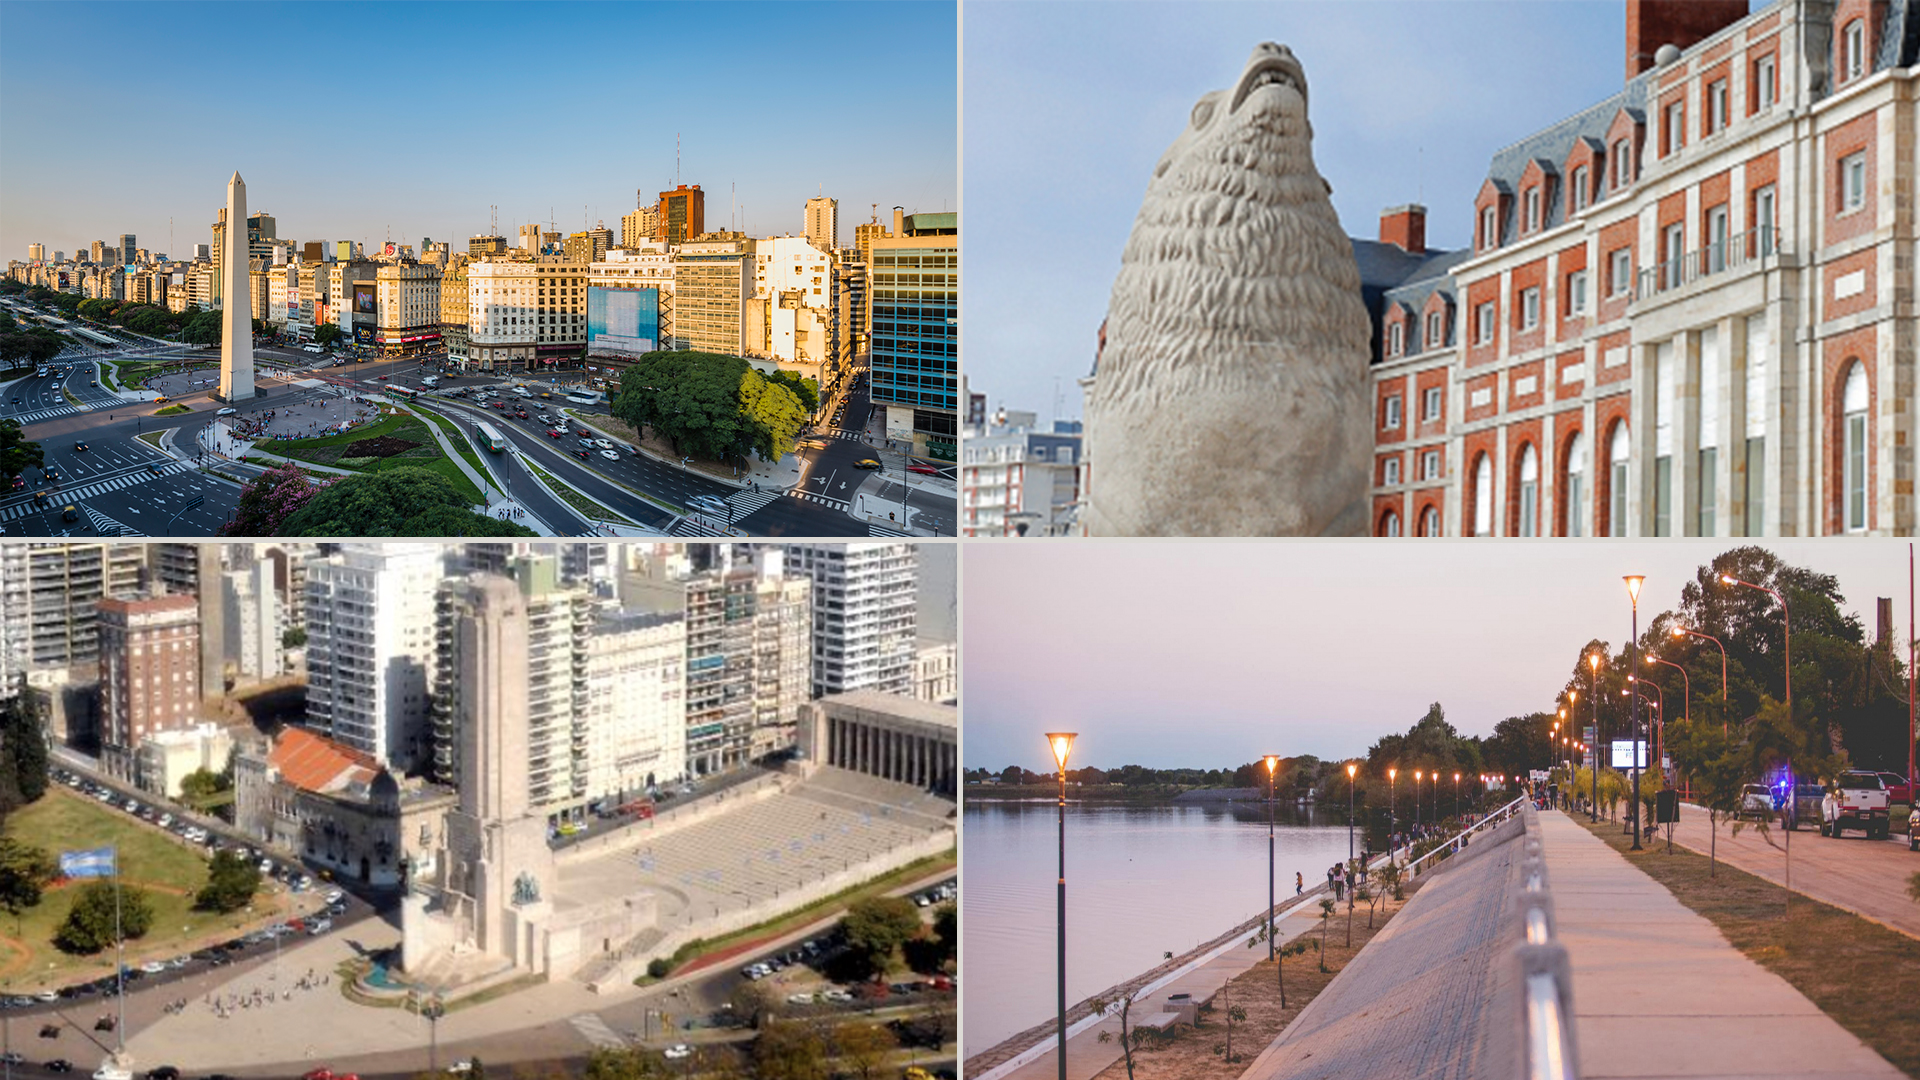 Las ciudades de Mar del Plata, Santa Fe, Rosario, Villa Carlos Paz, Concordia y la Ciudad de Buenos Aires, presentaron sus opciones turísticas, gastronómicas y culturales para Semana Santa.